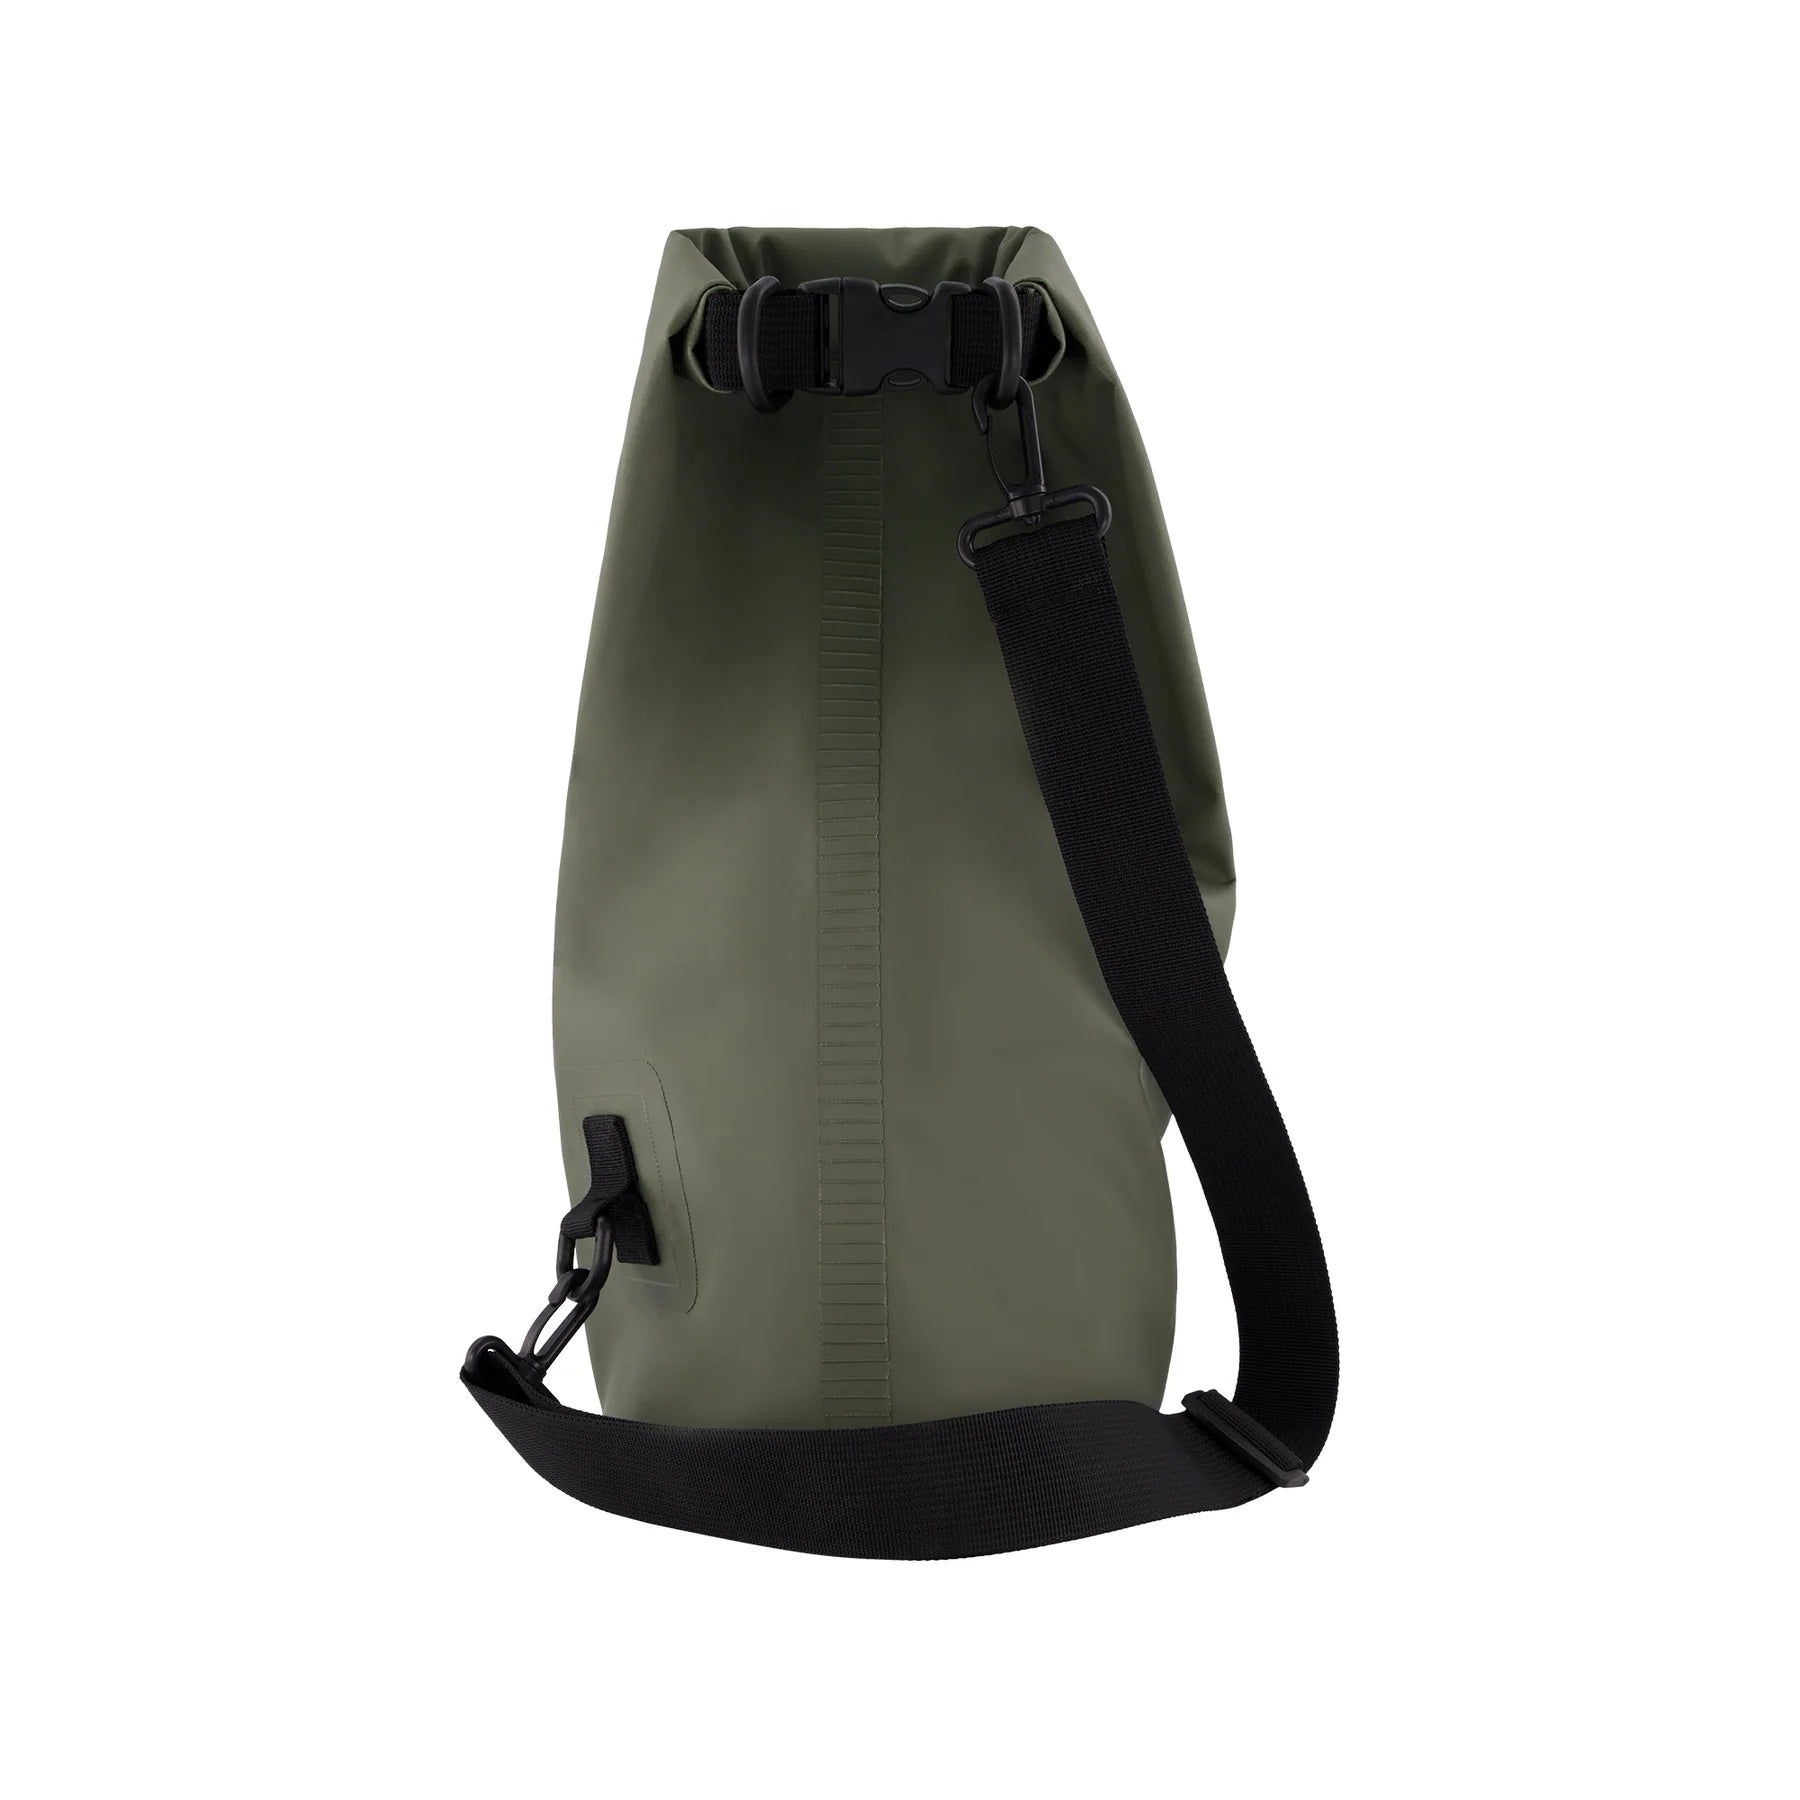 Gym Dry Bag - Sleek and Waterproof